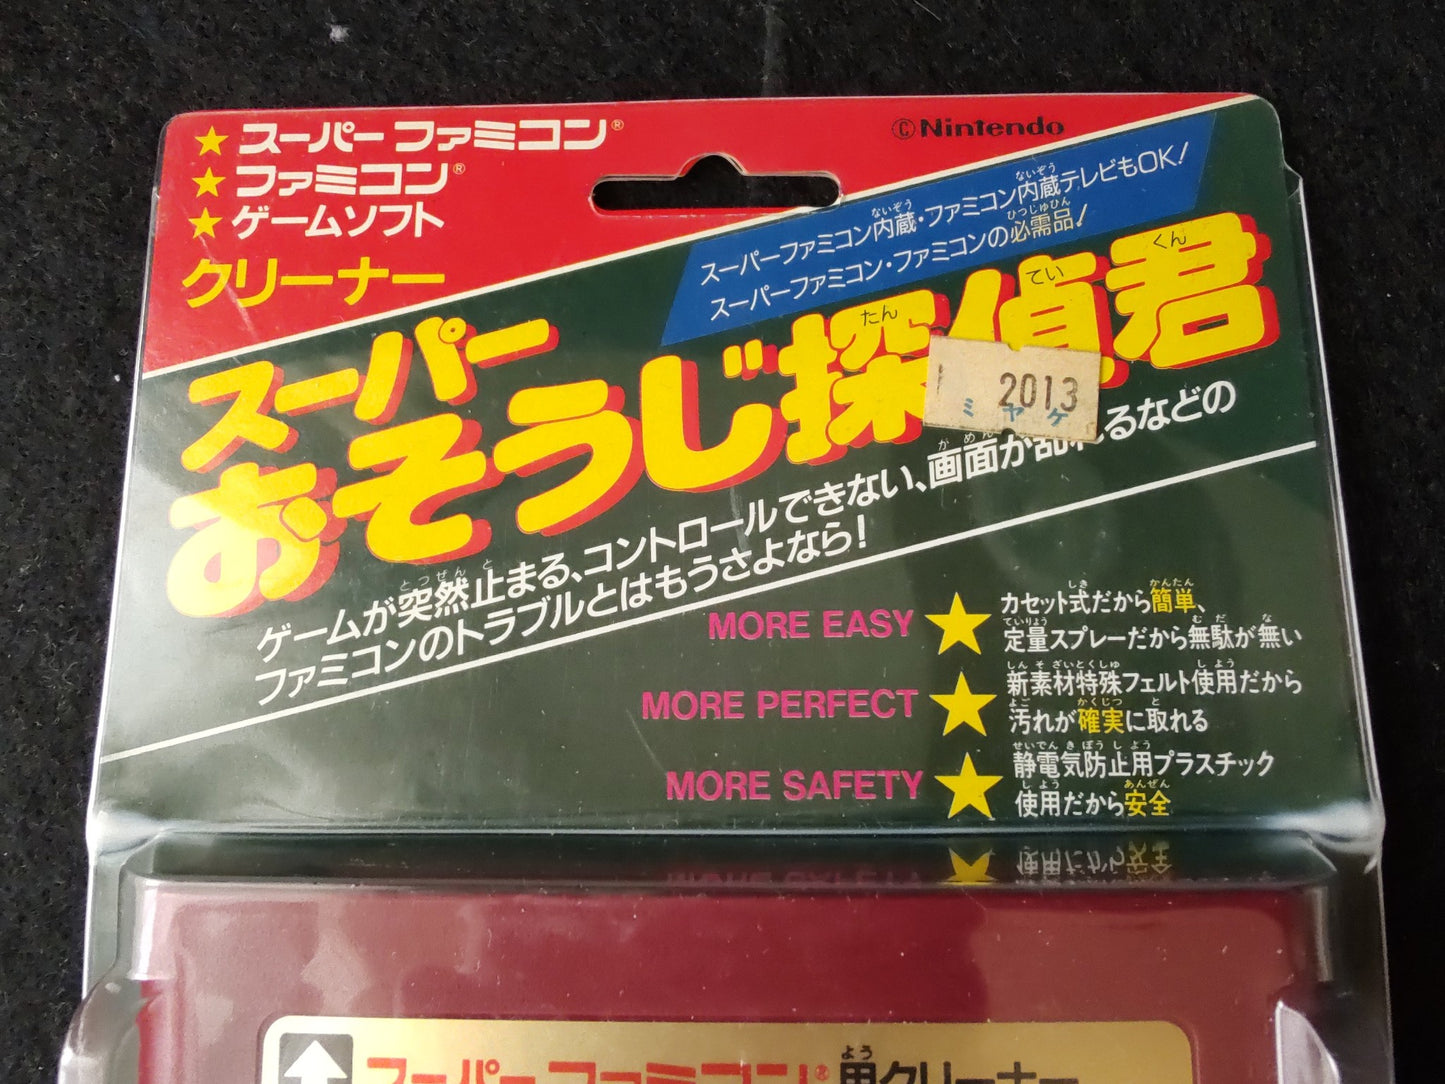 Super Famicom SUPER OSOUJI TANTEI KUN cleaner cartridge SFC, SNES w/box-f0914-